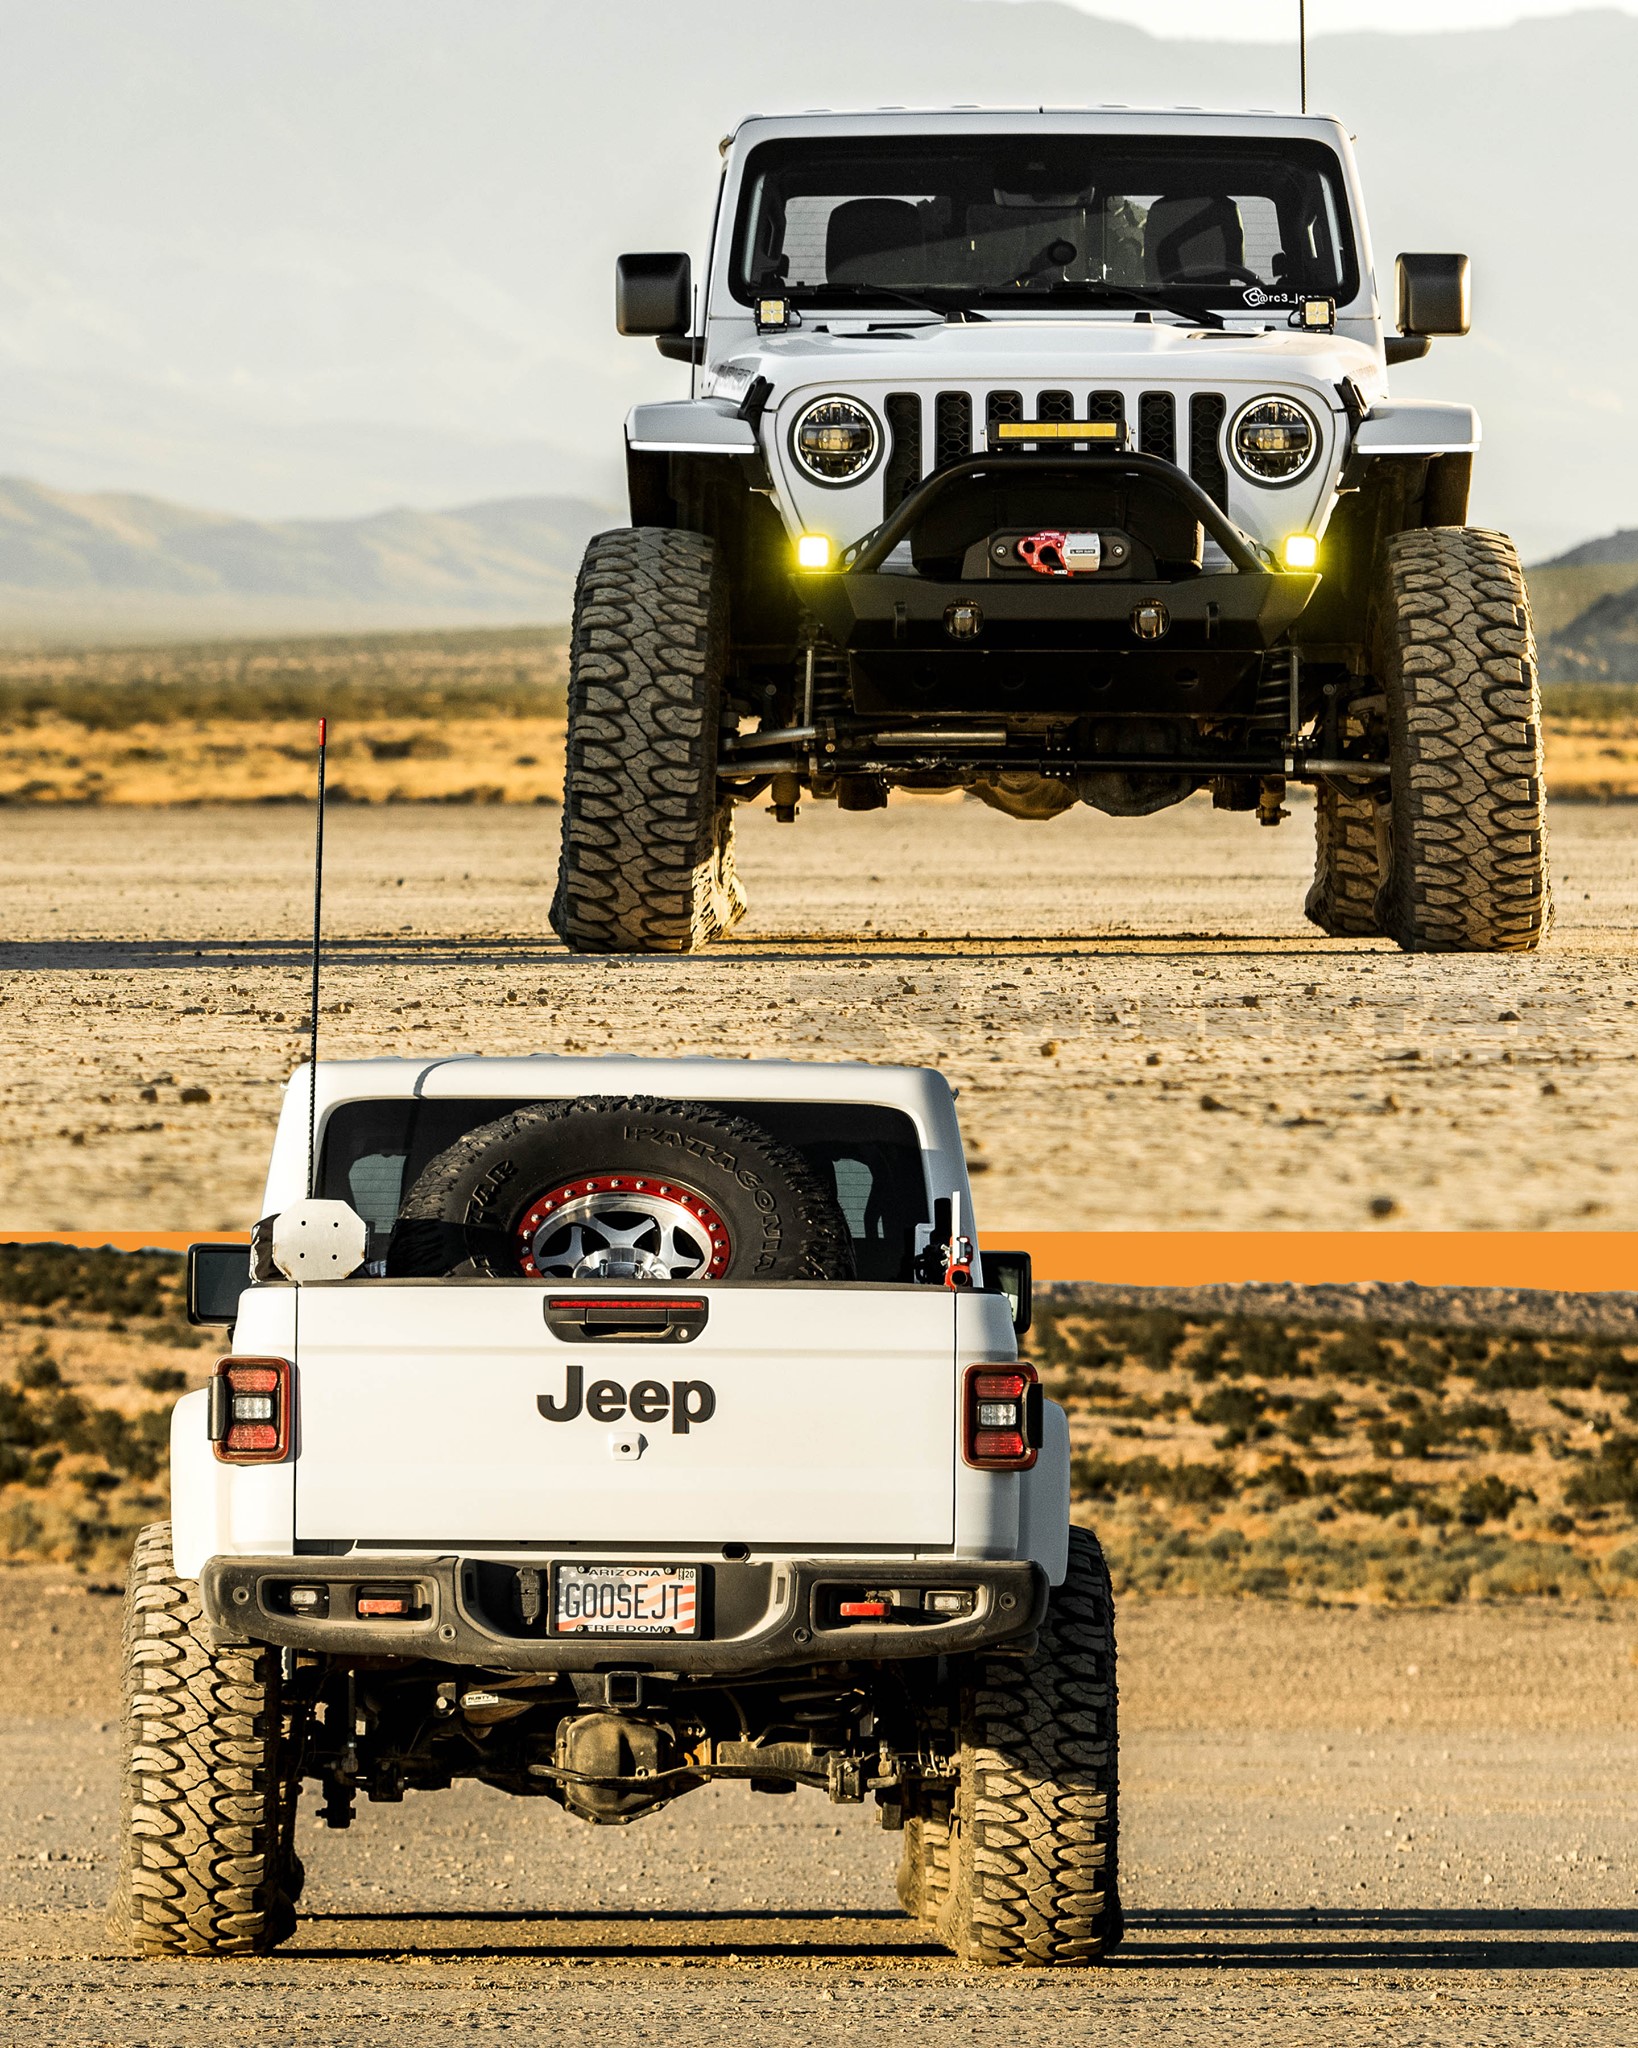 Gợi ý các mẫu lốp offroad cho xe Jeep